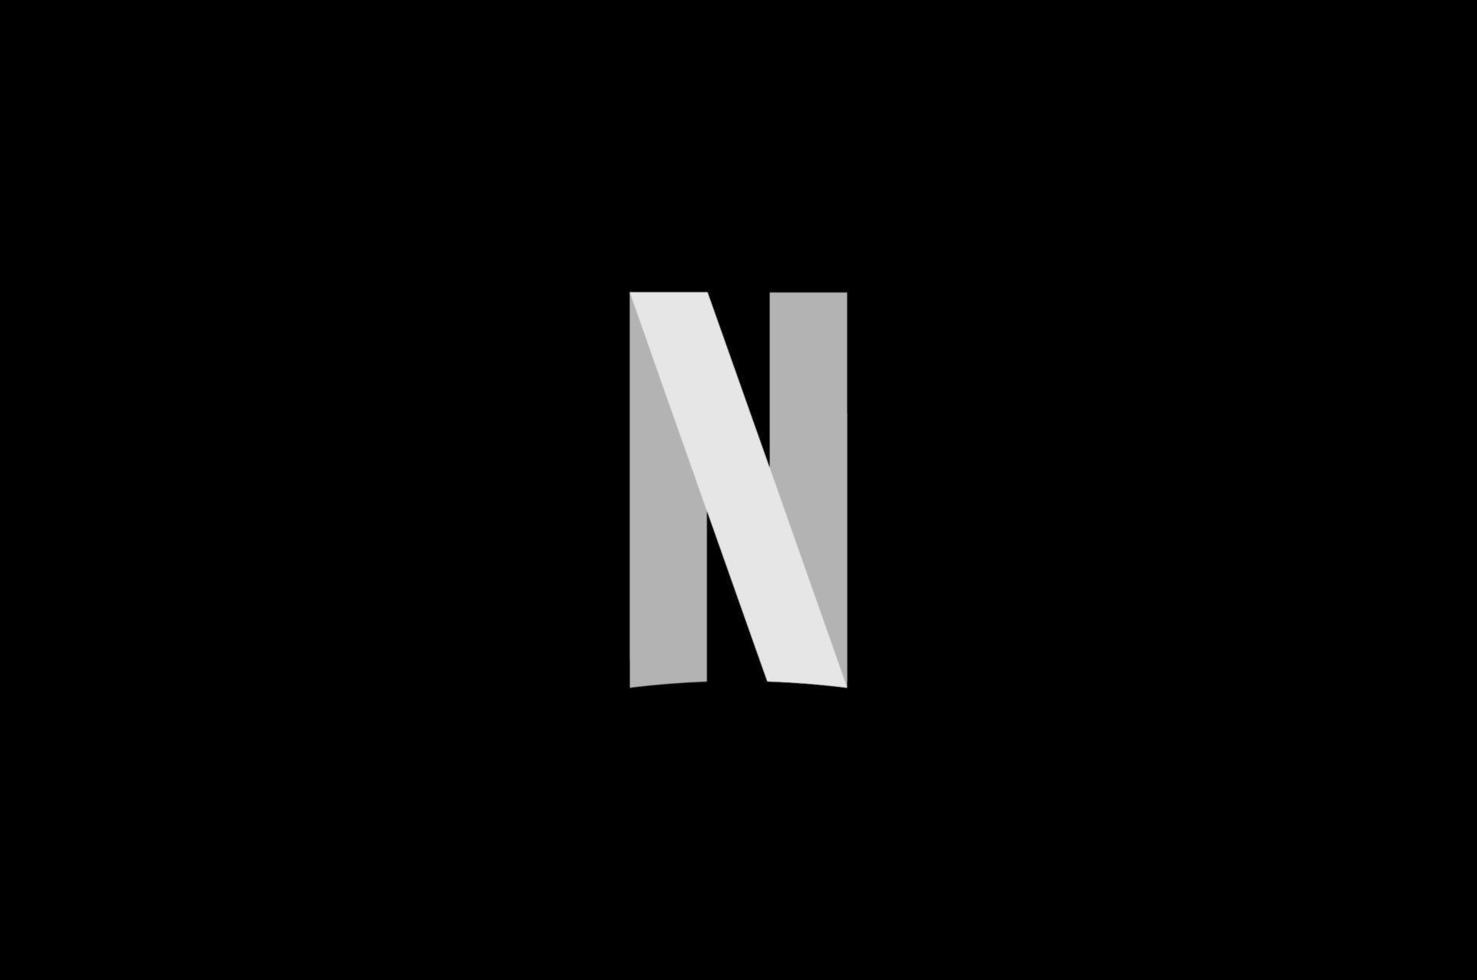 Netflix Logo Vektor, Netflix Symbol kostenlos Vektor